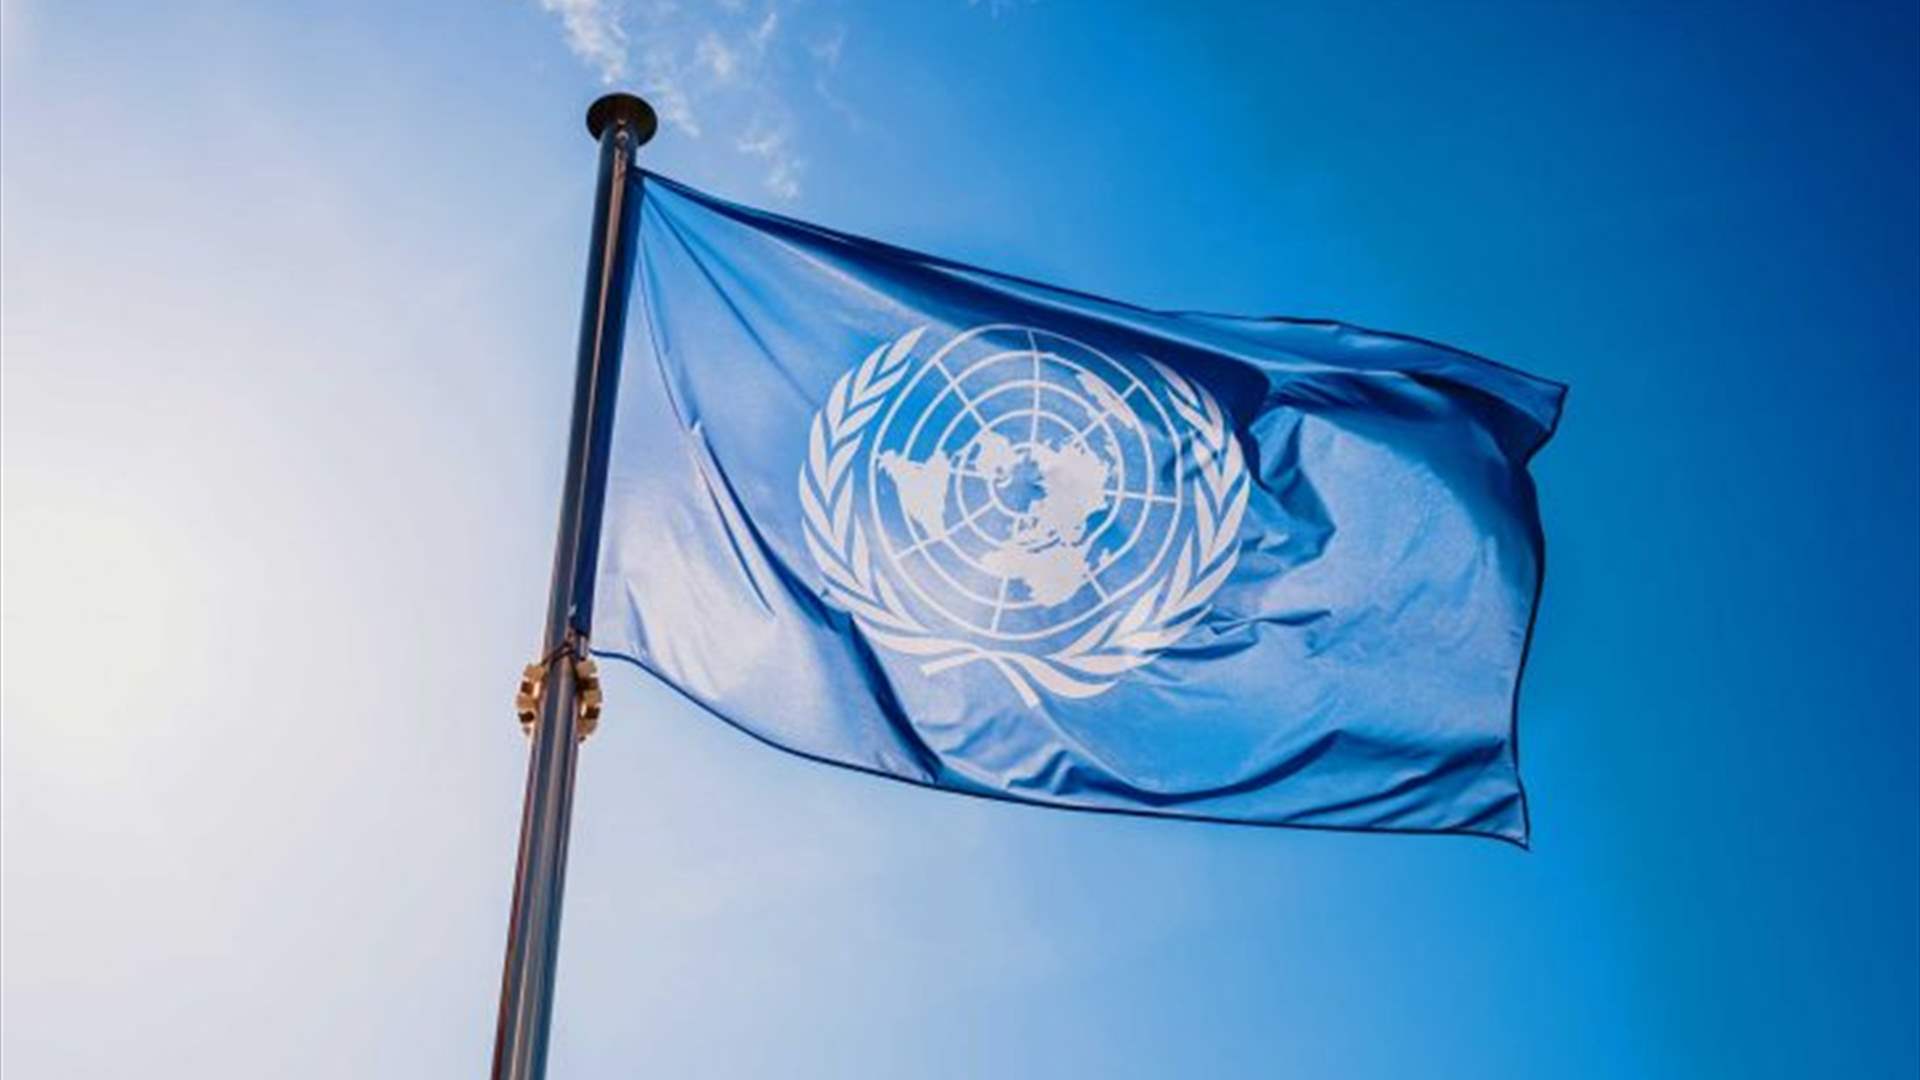 محققون من الأمم المتحدة يعلنون عدم العثور على أدلة عن إبادة في أوكرانيا